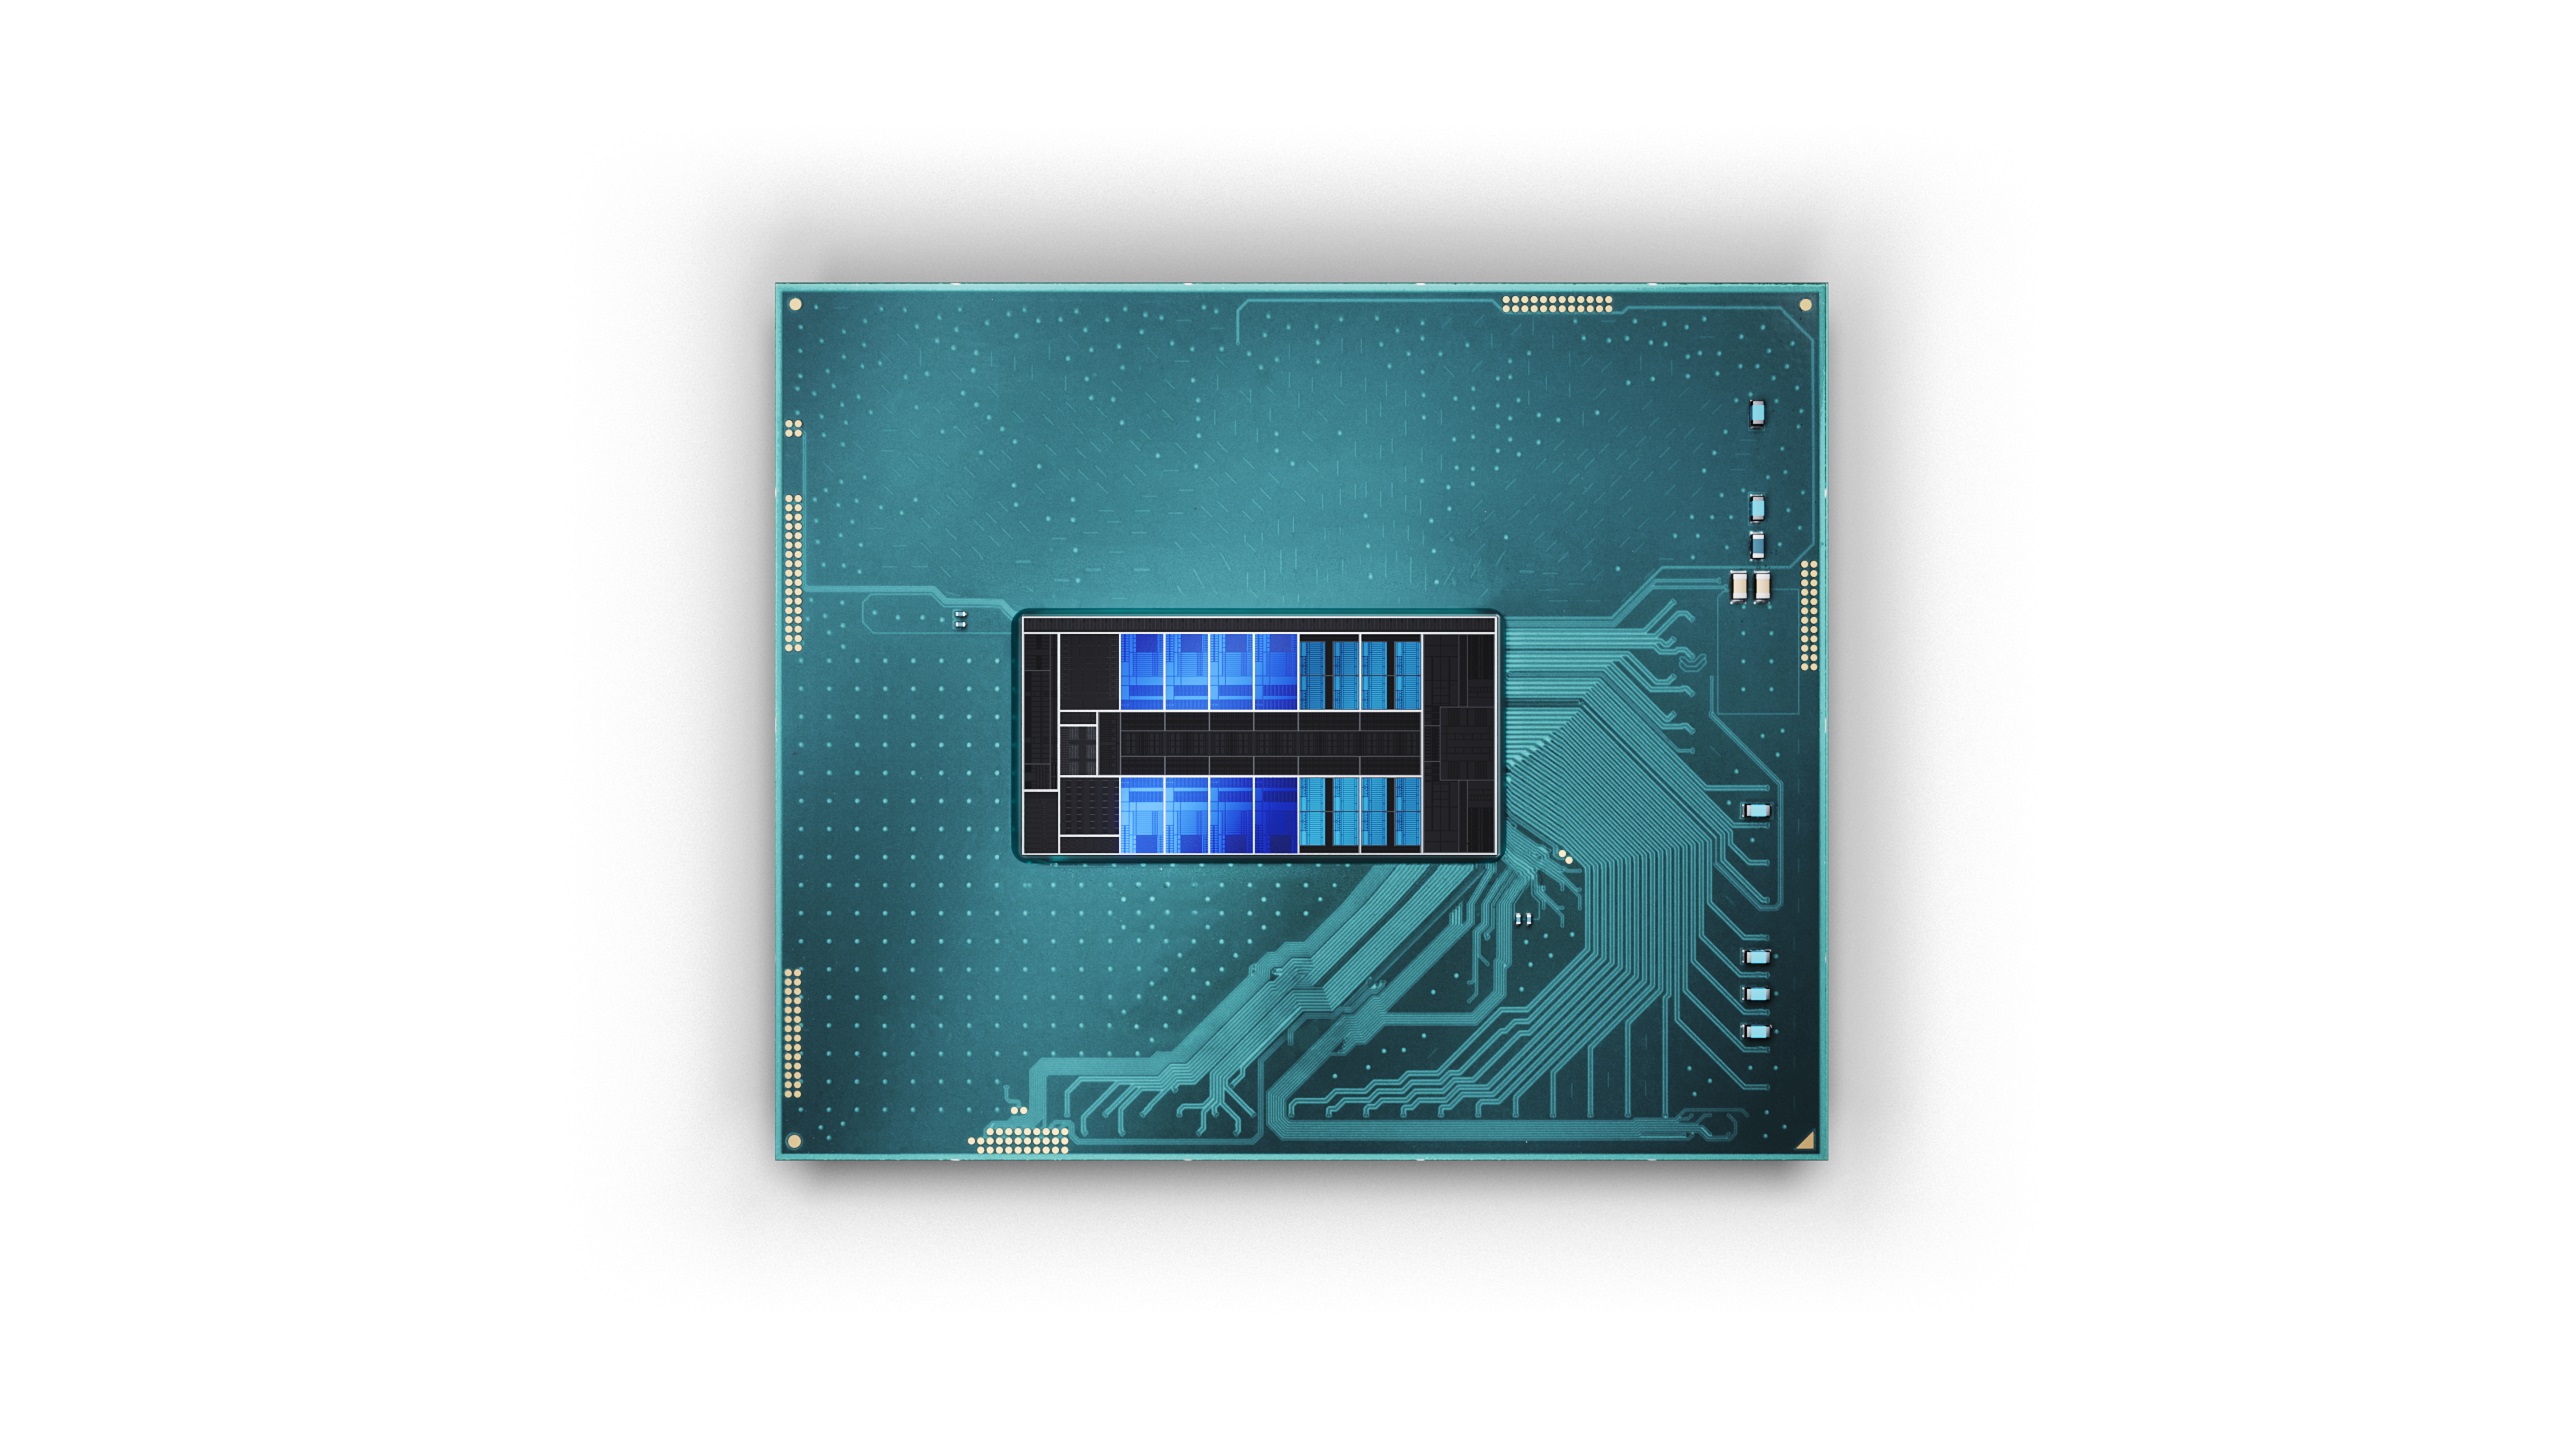 Intel drops 18 new 14th-gen Core desktop processors at CES